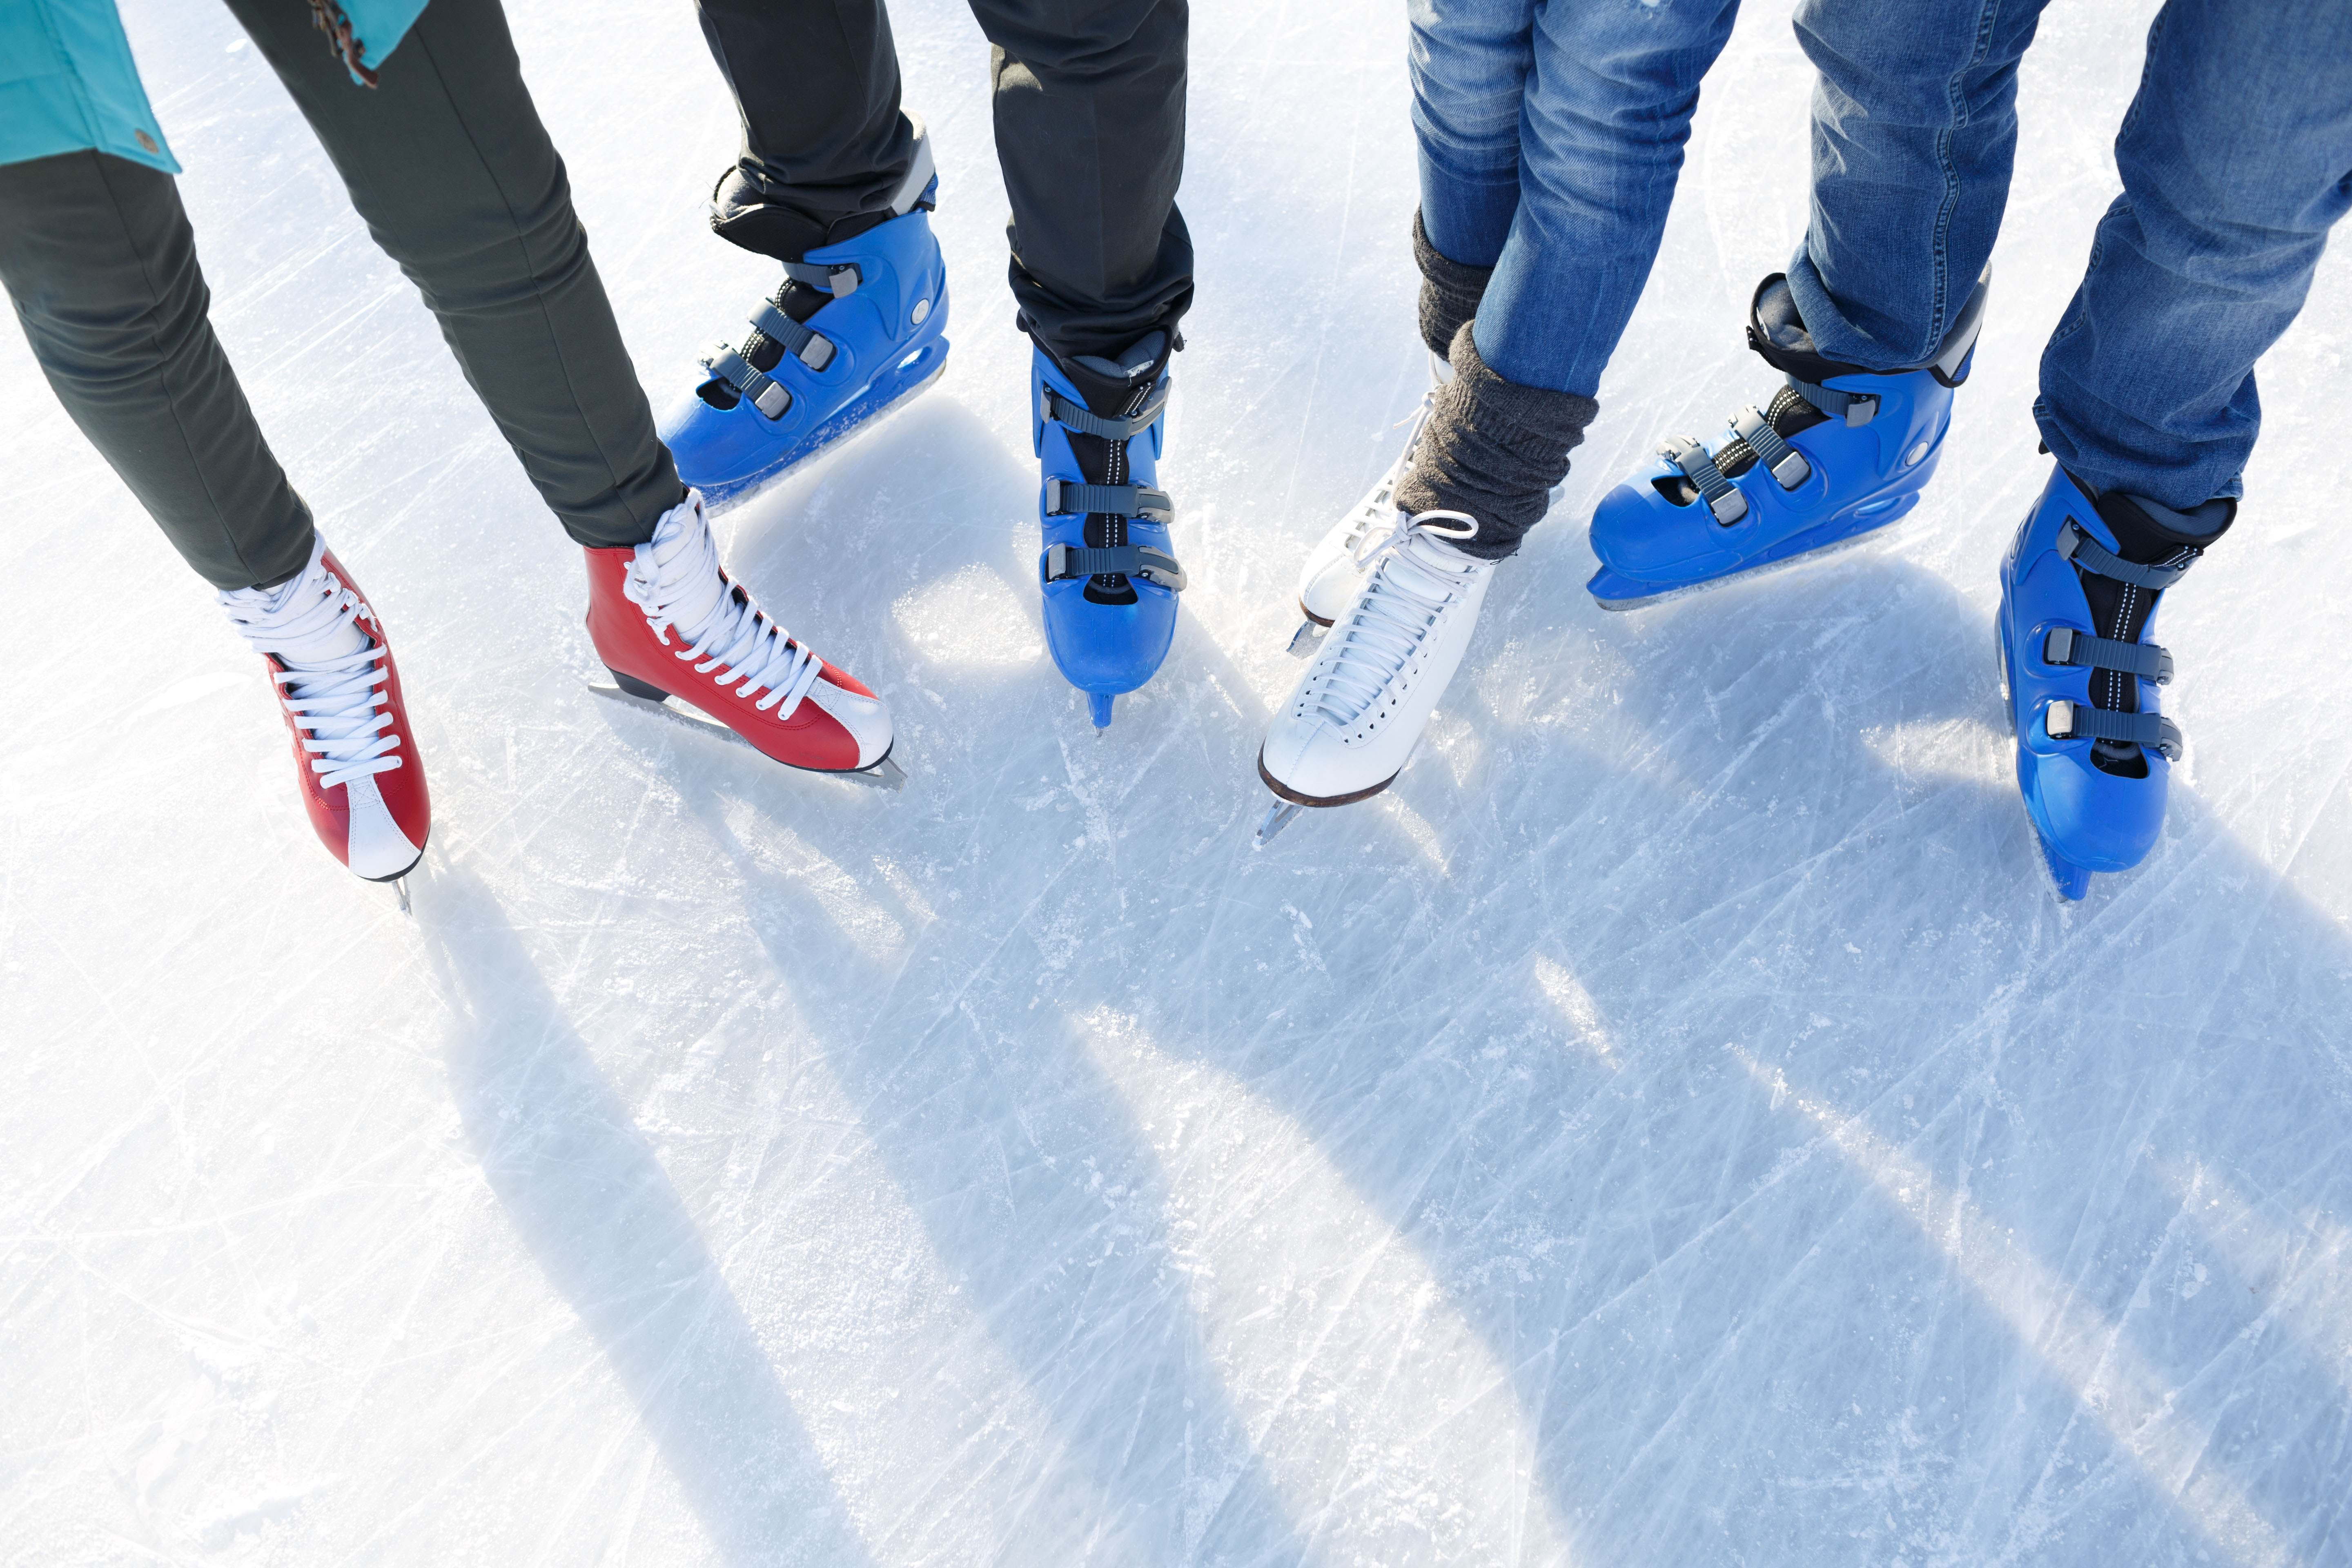 Benen en schaatsen van vier personen op het ijs